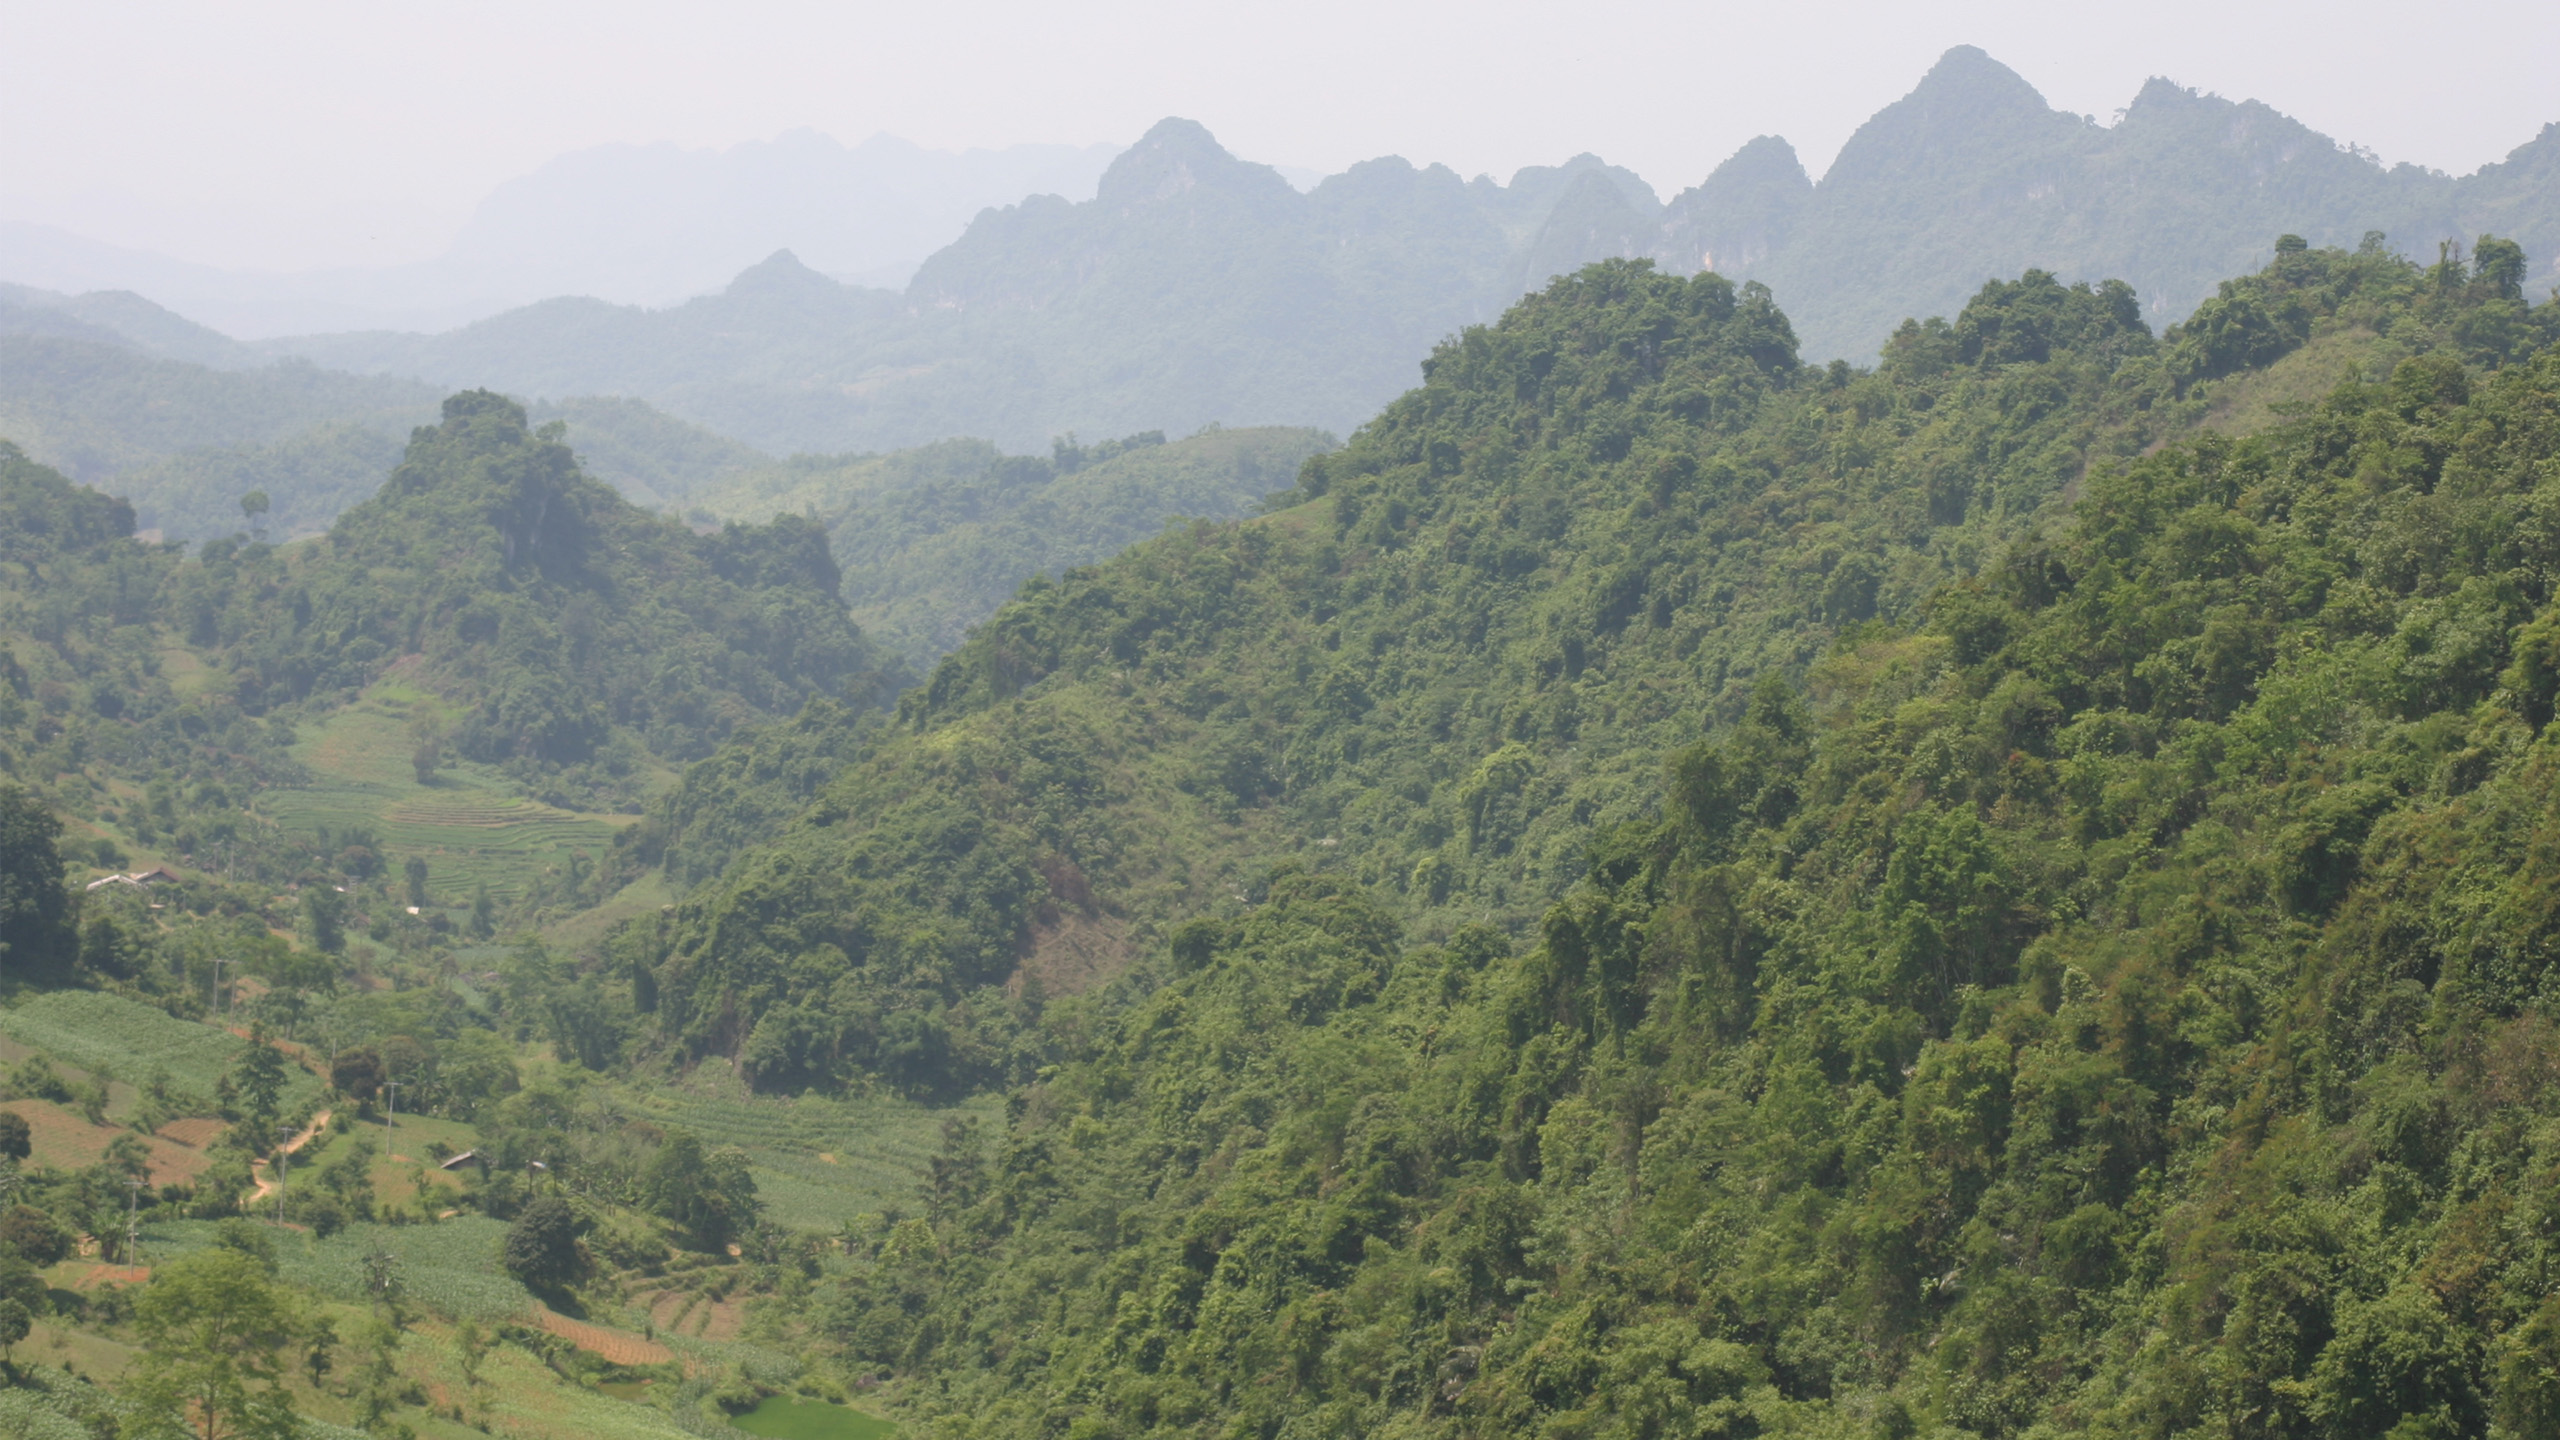 Regenwald wächst im Norden Vietnams häufig nur noch in fragmentierten Restbeständen. Durch die Abholzung wird eine Vielzahl von Arten gefährdet. | Thomas Ziegler